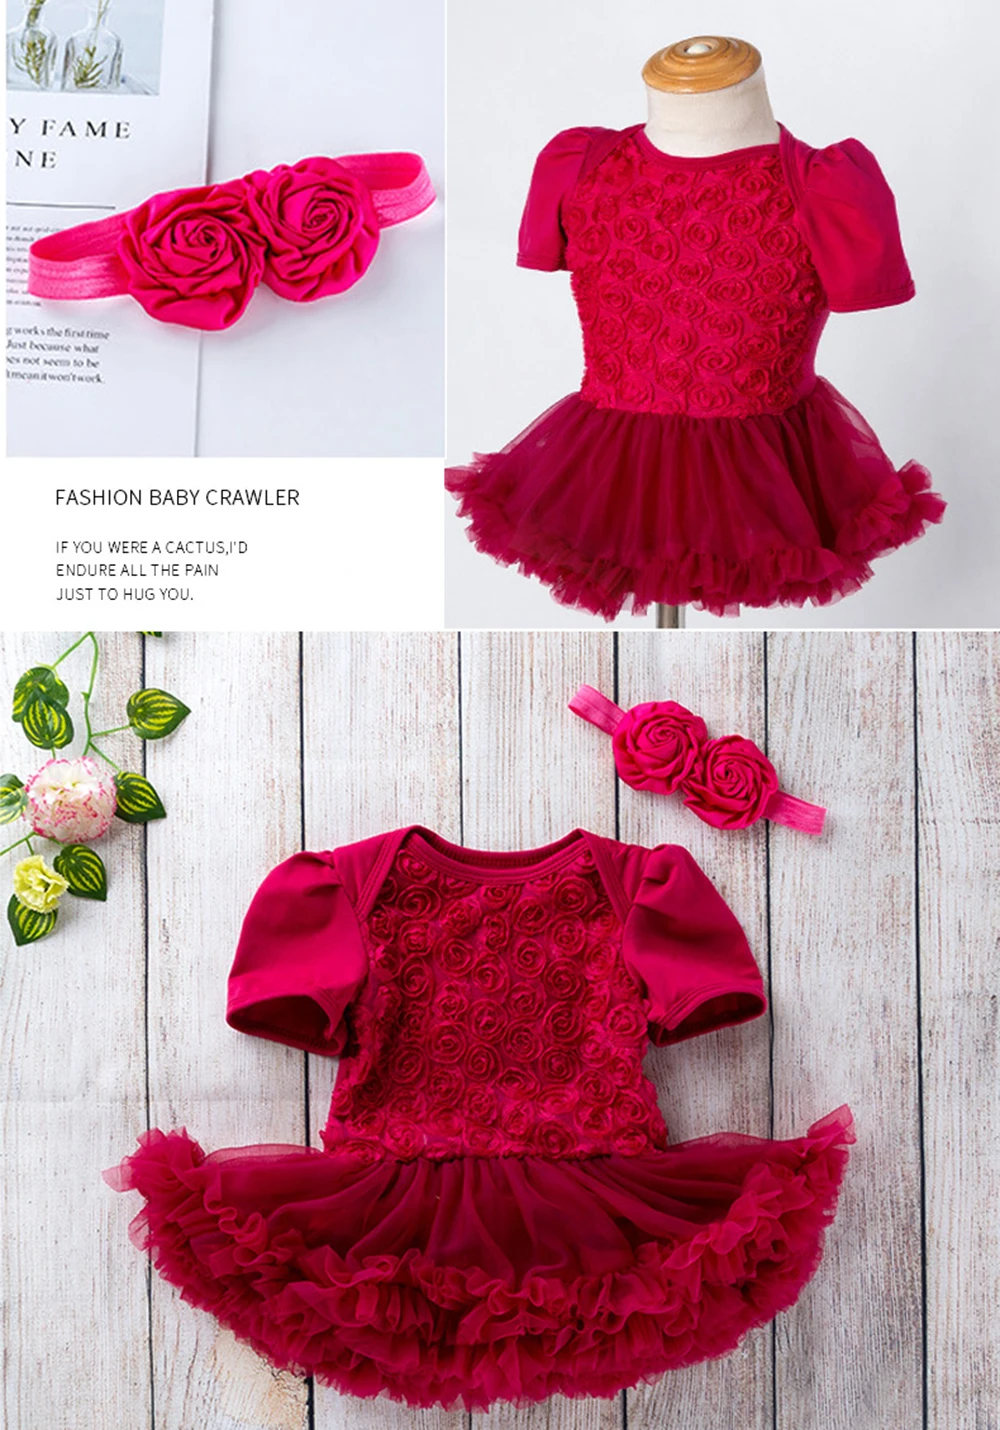 Hylidge/милое платье принцессы с юбкой-пачкой повязка на голову, Детский костюм боди с розой и цветком, цельнокроеное рождественское платье